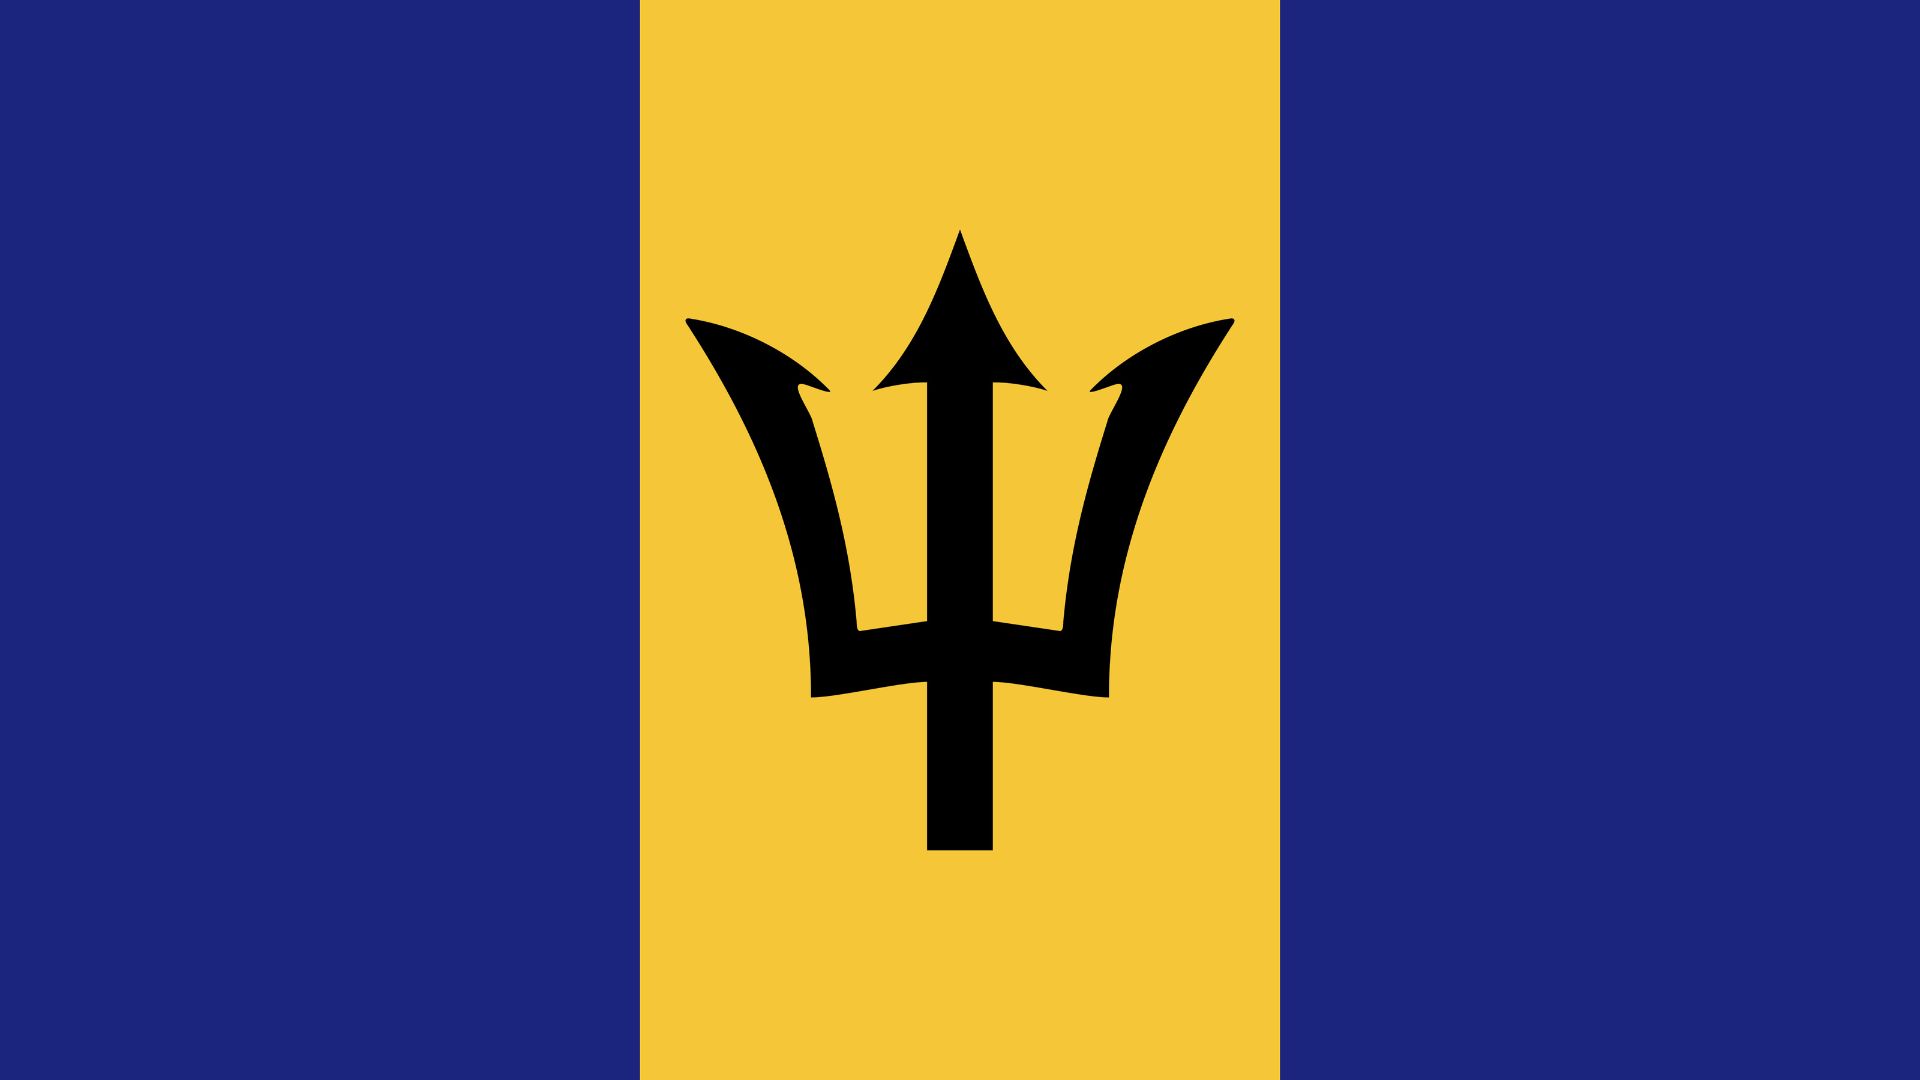 A bandeira de Barbados consiste de duas listras verticais azuis separadas por uma dourada, que contém um tridente negro.